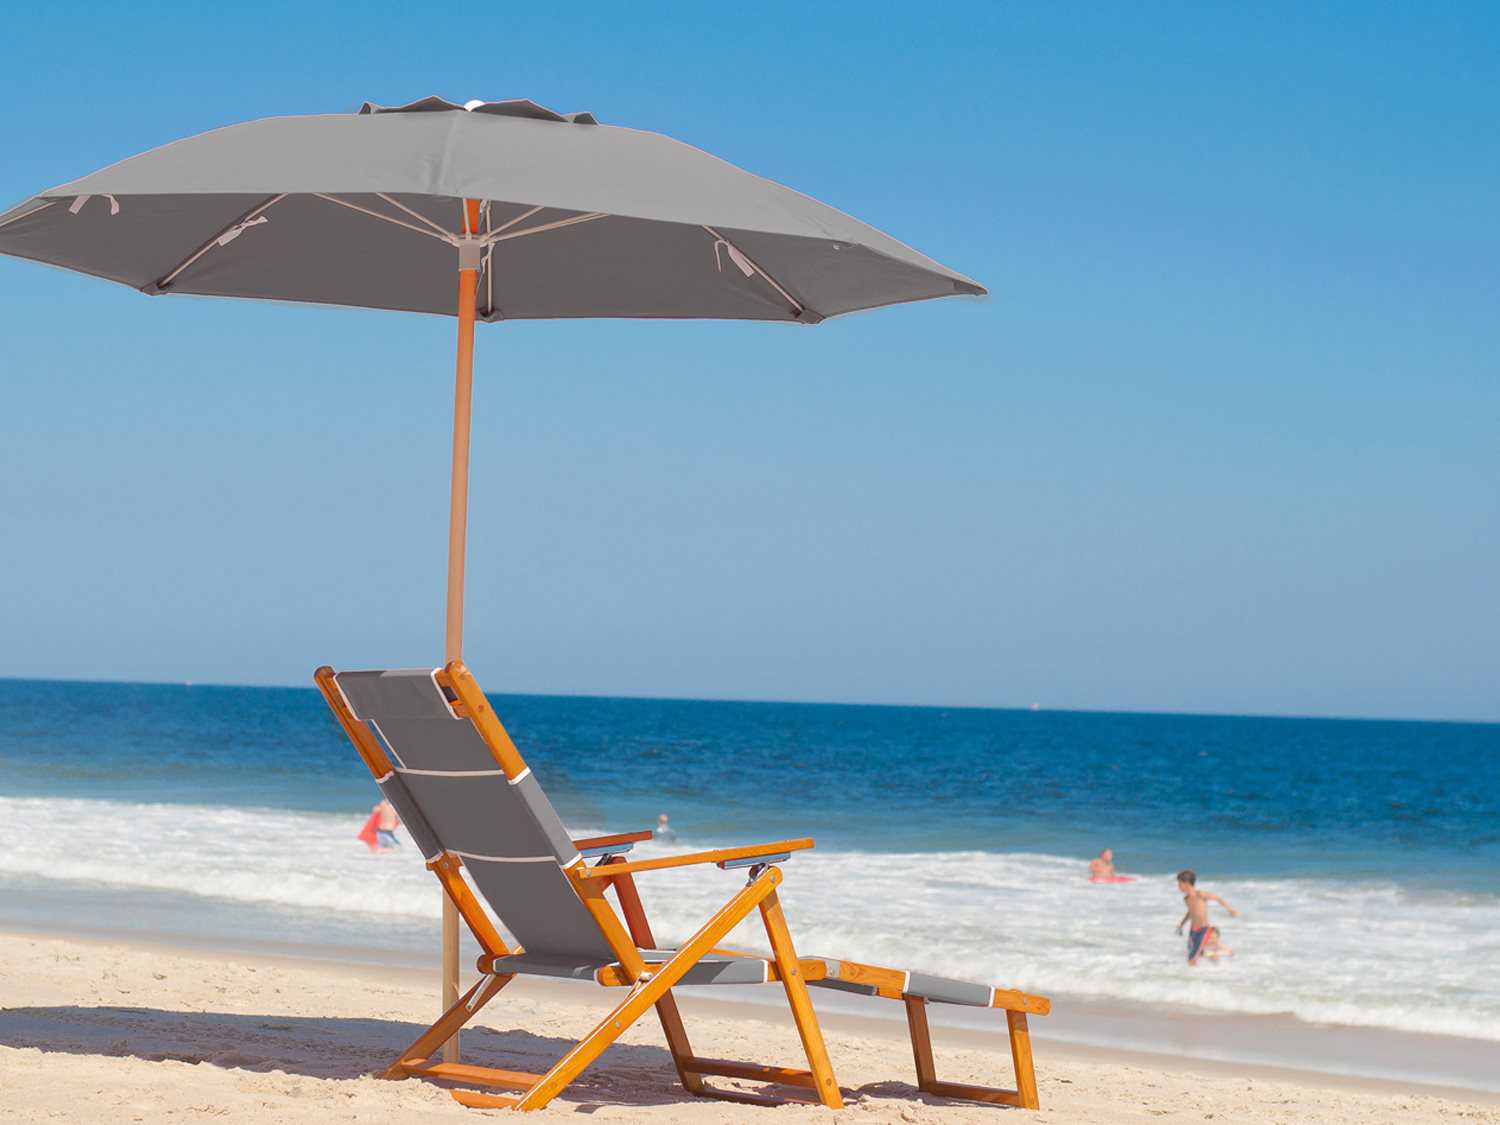 Umbrella for beach chair